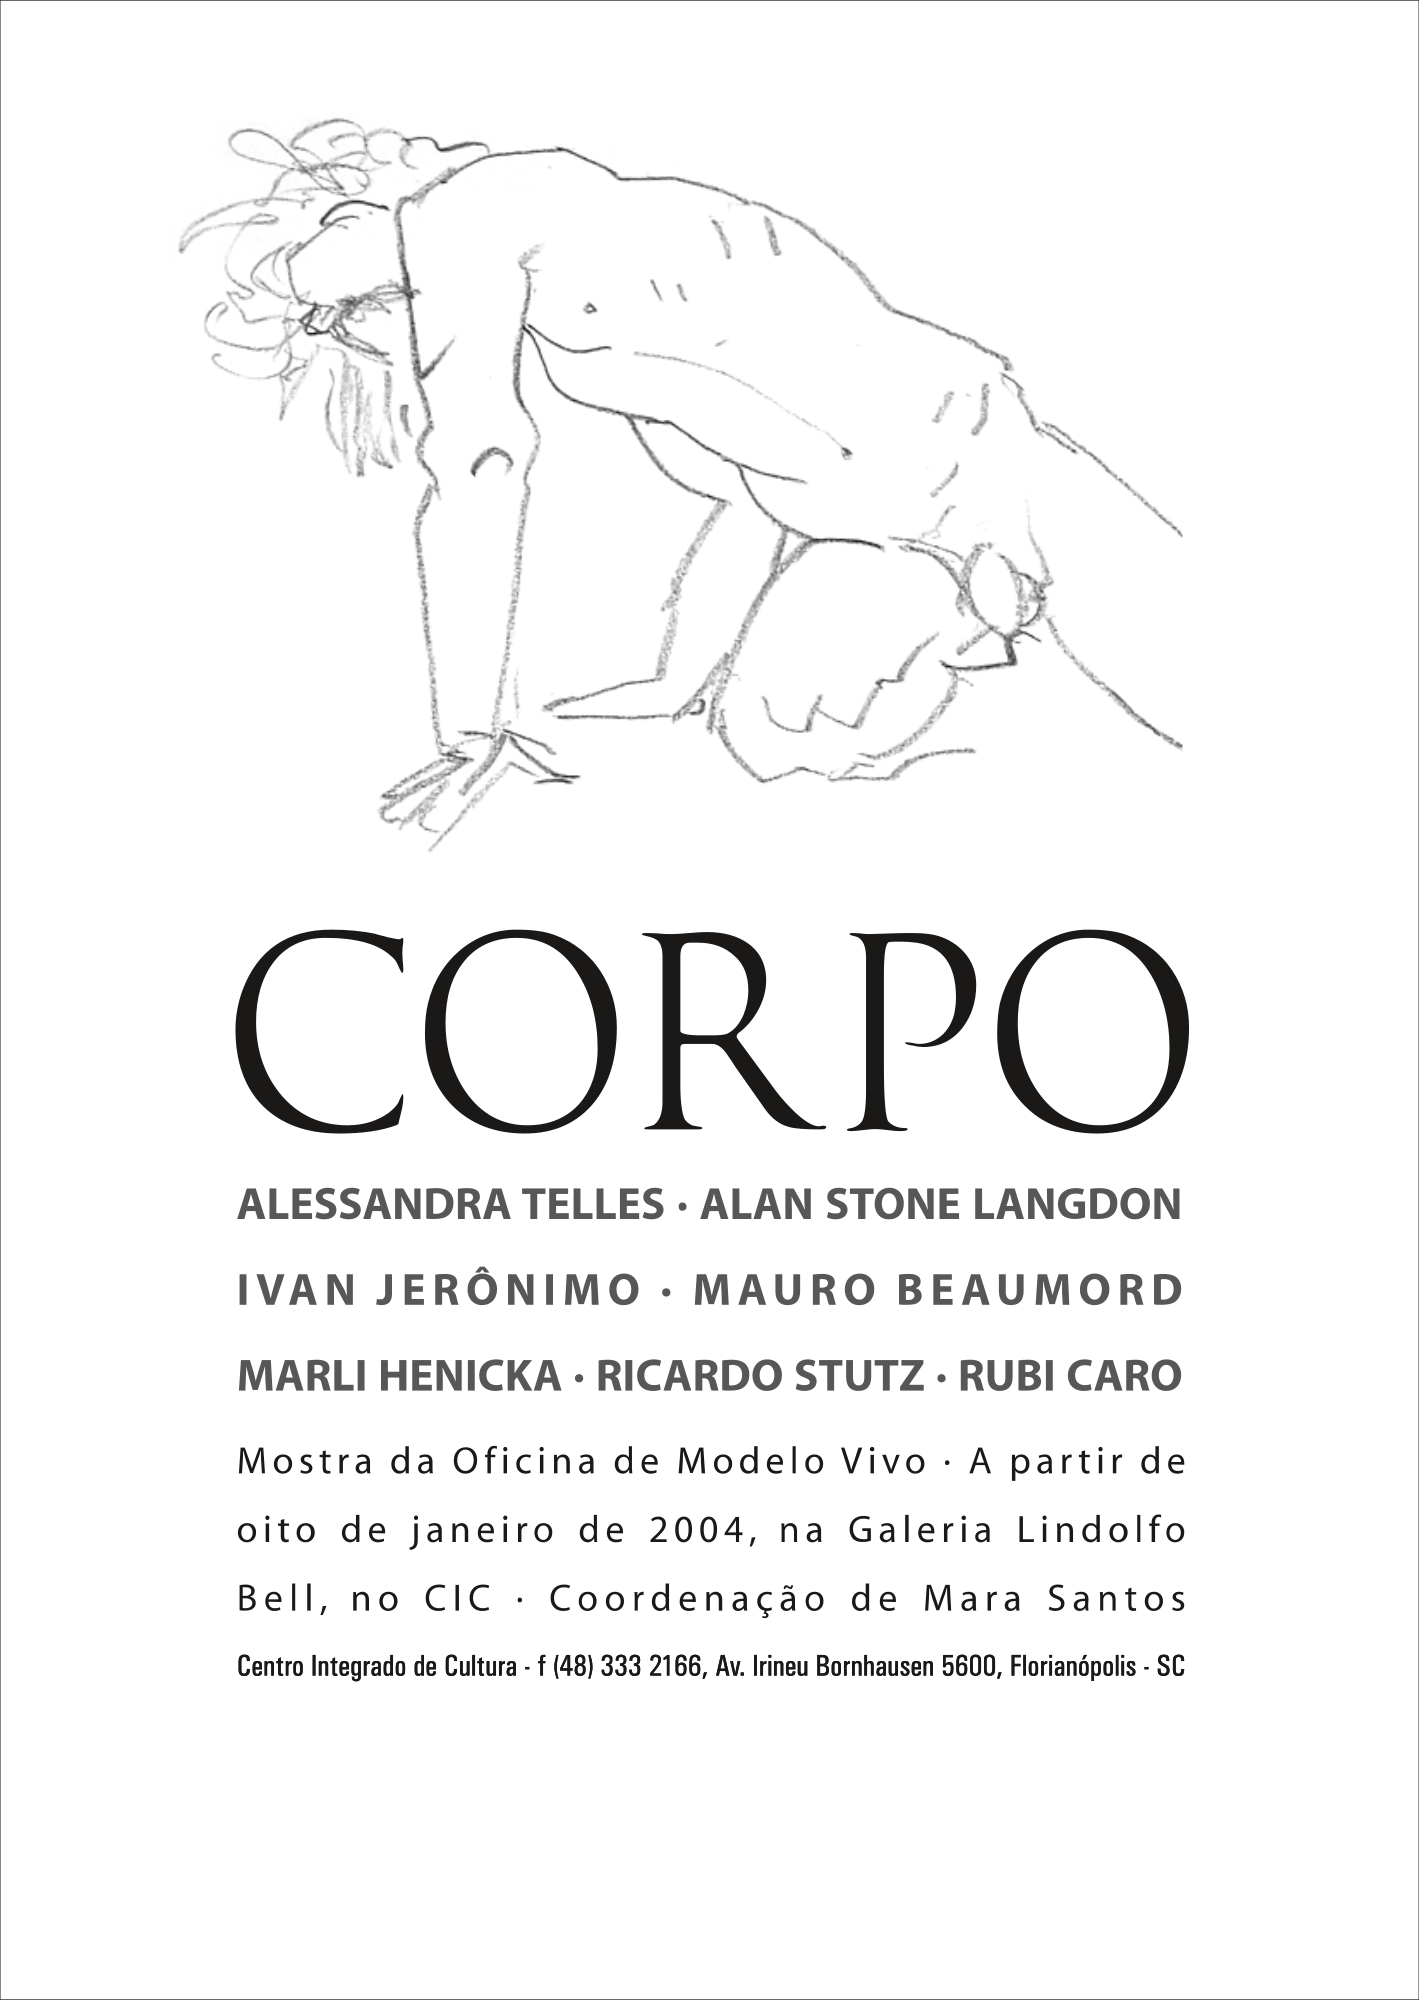 Convite exposição Corpo com desenho de um homem pelado apoiado sobre pernas e braços e embaixo as informações da exposição